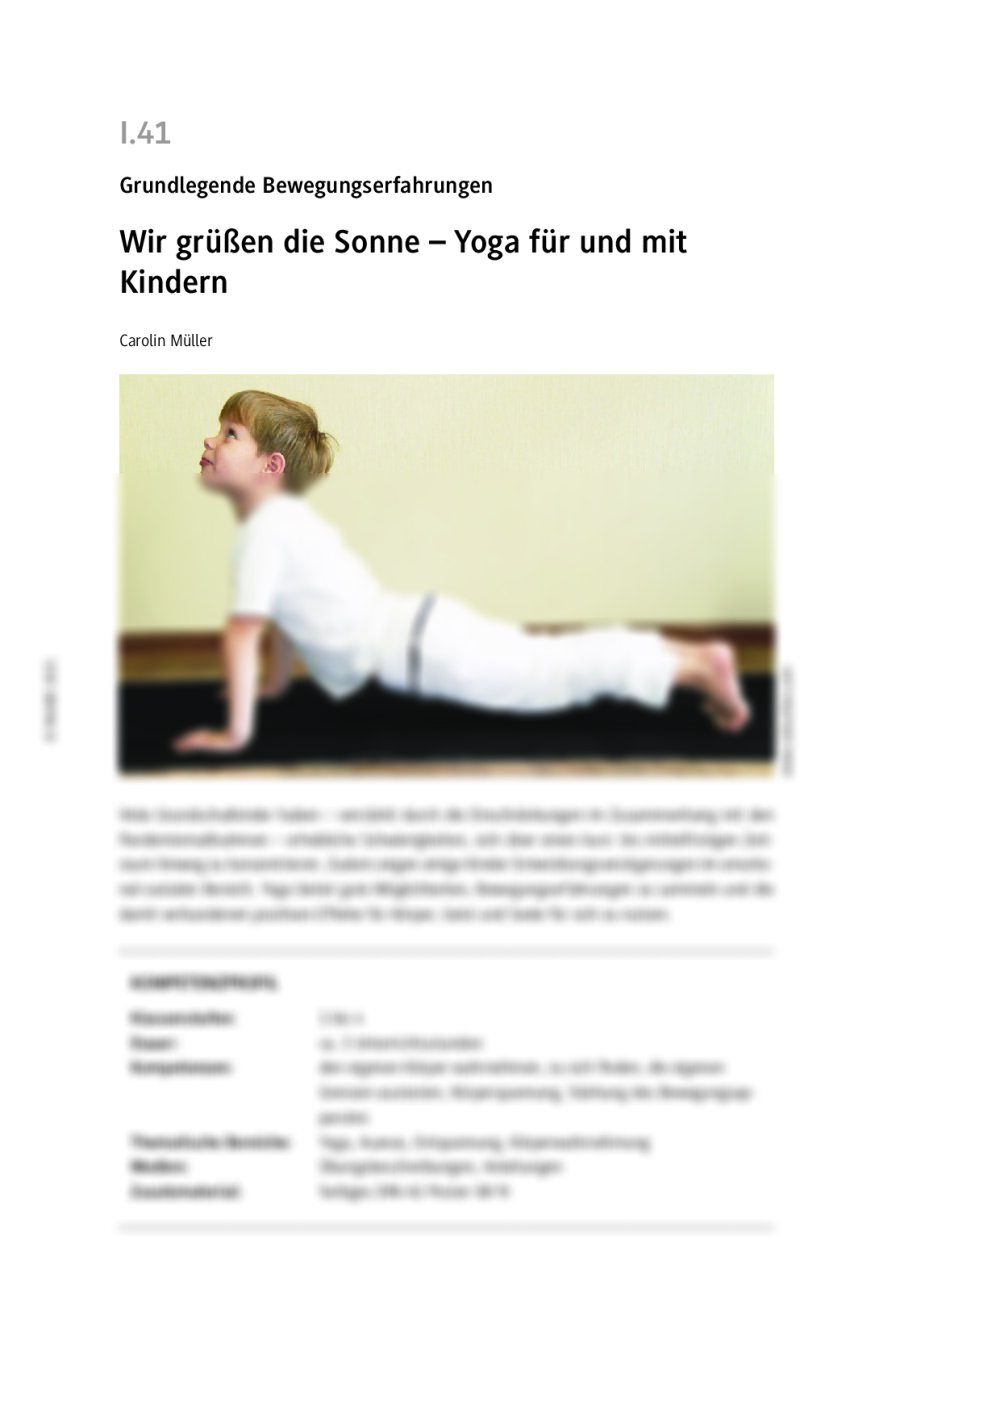 Yoga mit und für Kinder - Seite 1